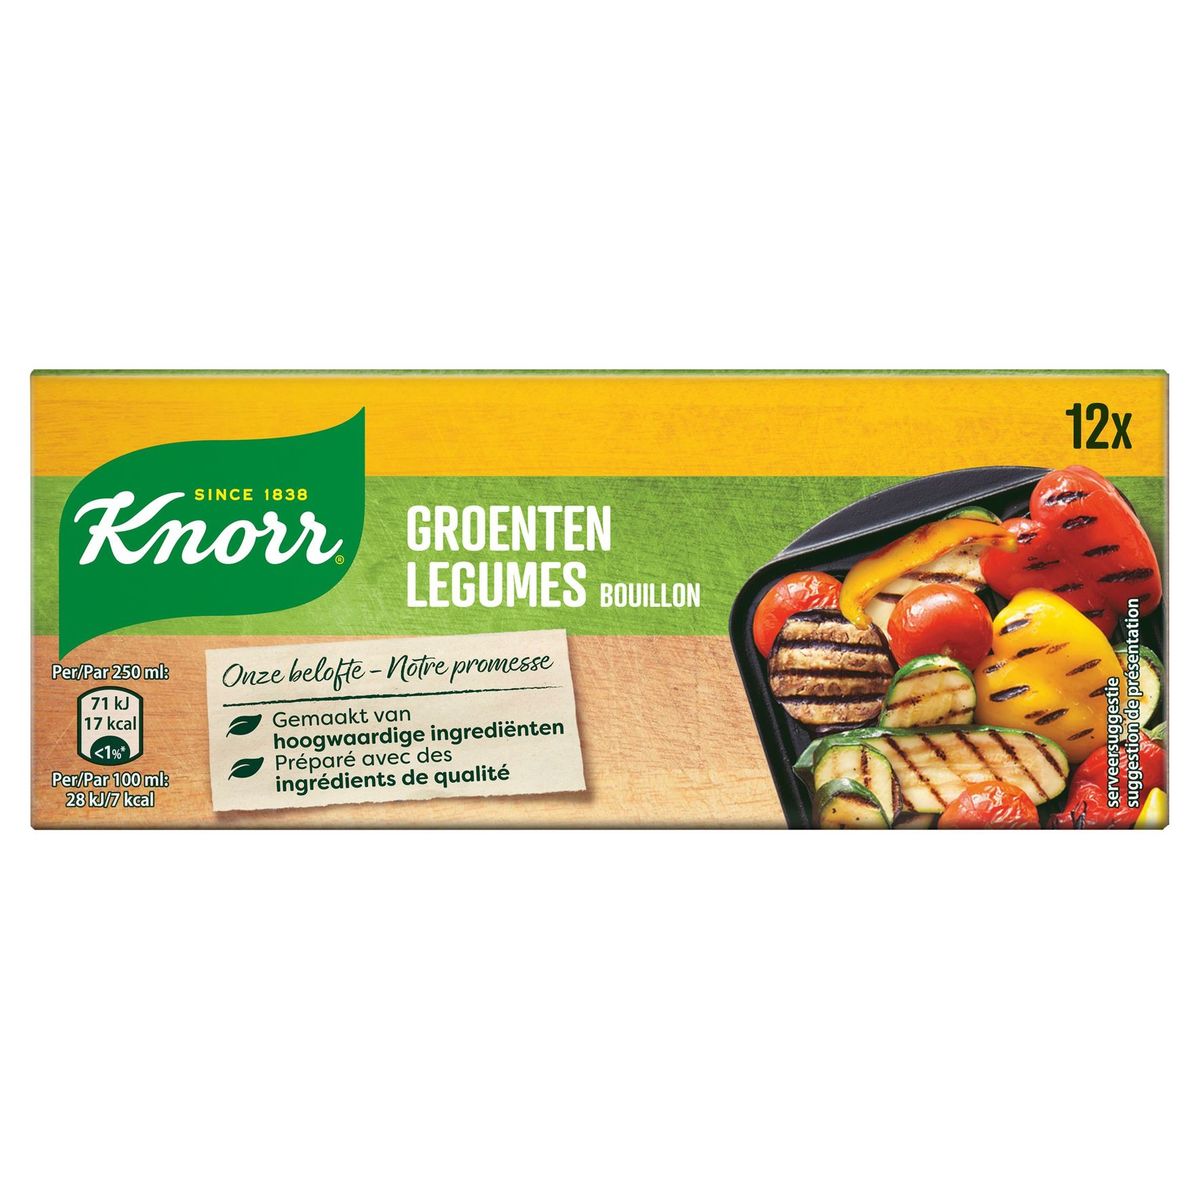 Knorr Original Bouillon Légumes 12 Cubes de Bouillons 12 x 10 g